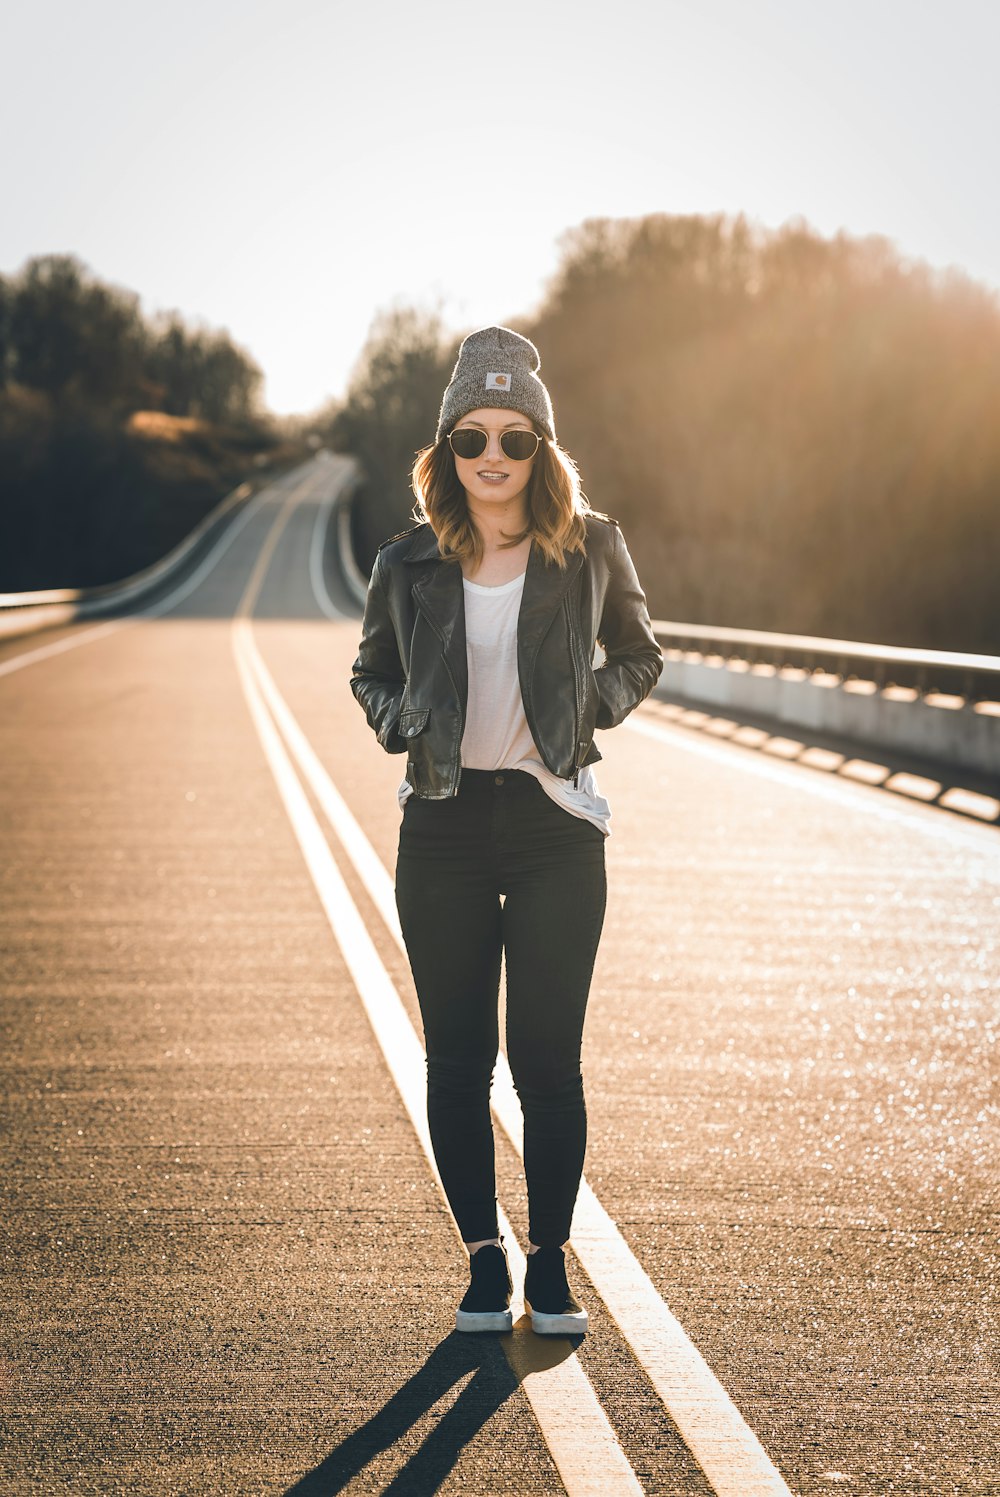 검은 재킷과 검은 바지를 입은 여자가 낮에 도로에 서 있다